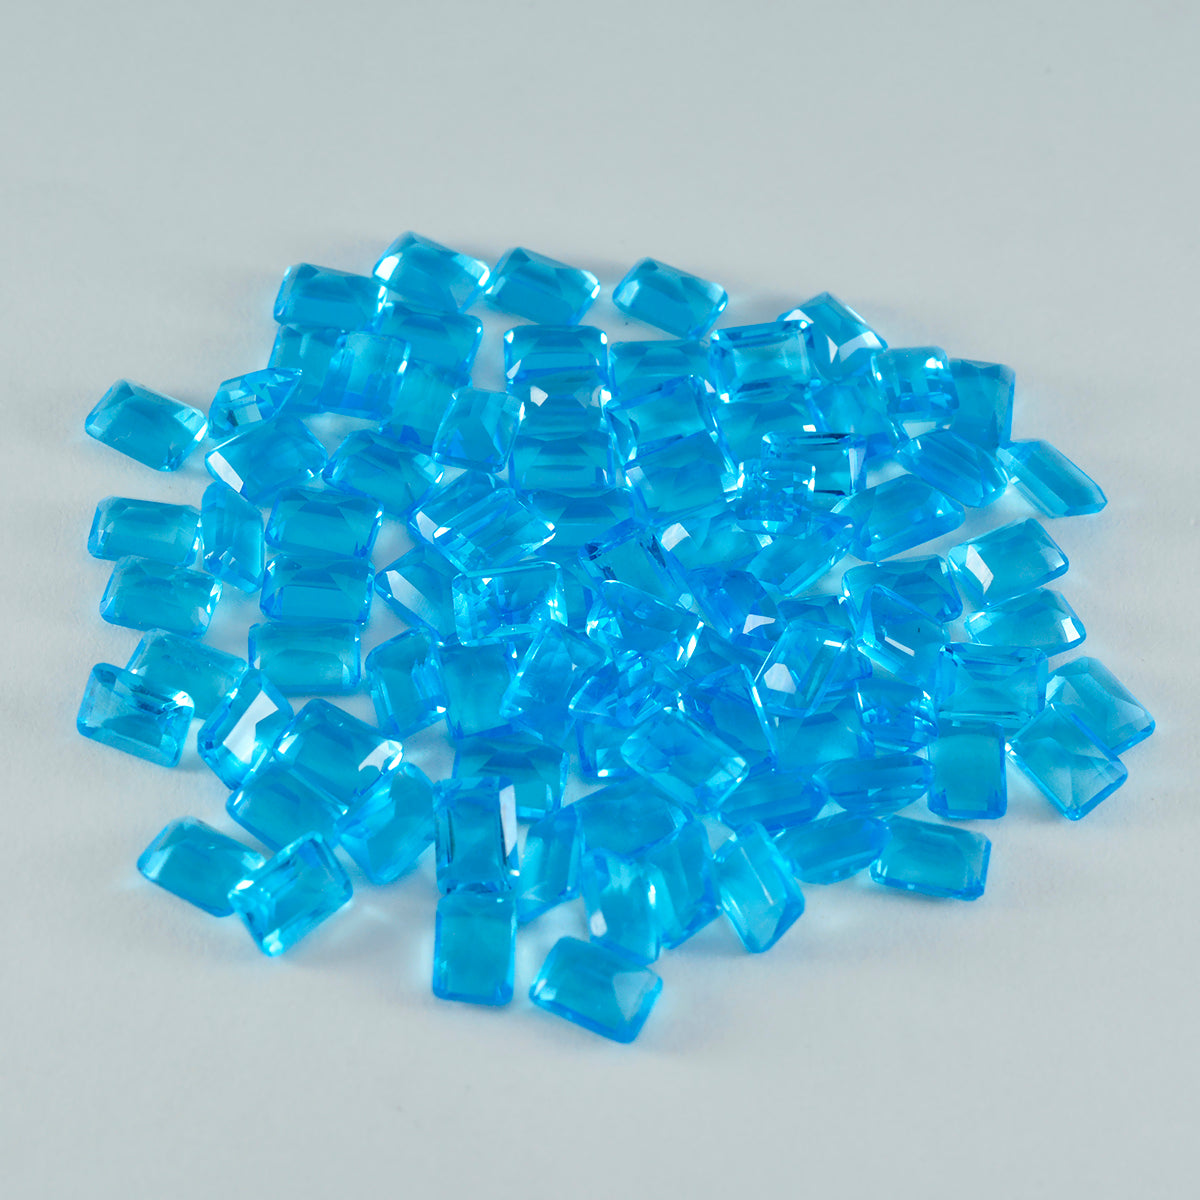 riyogems 1шт синий топаз cz ограненный 4x6 мм восьмиугольная форма драгоценный камень качества ААА